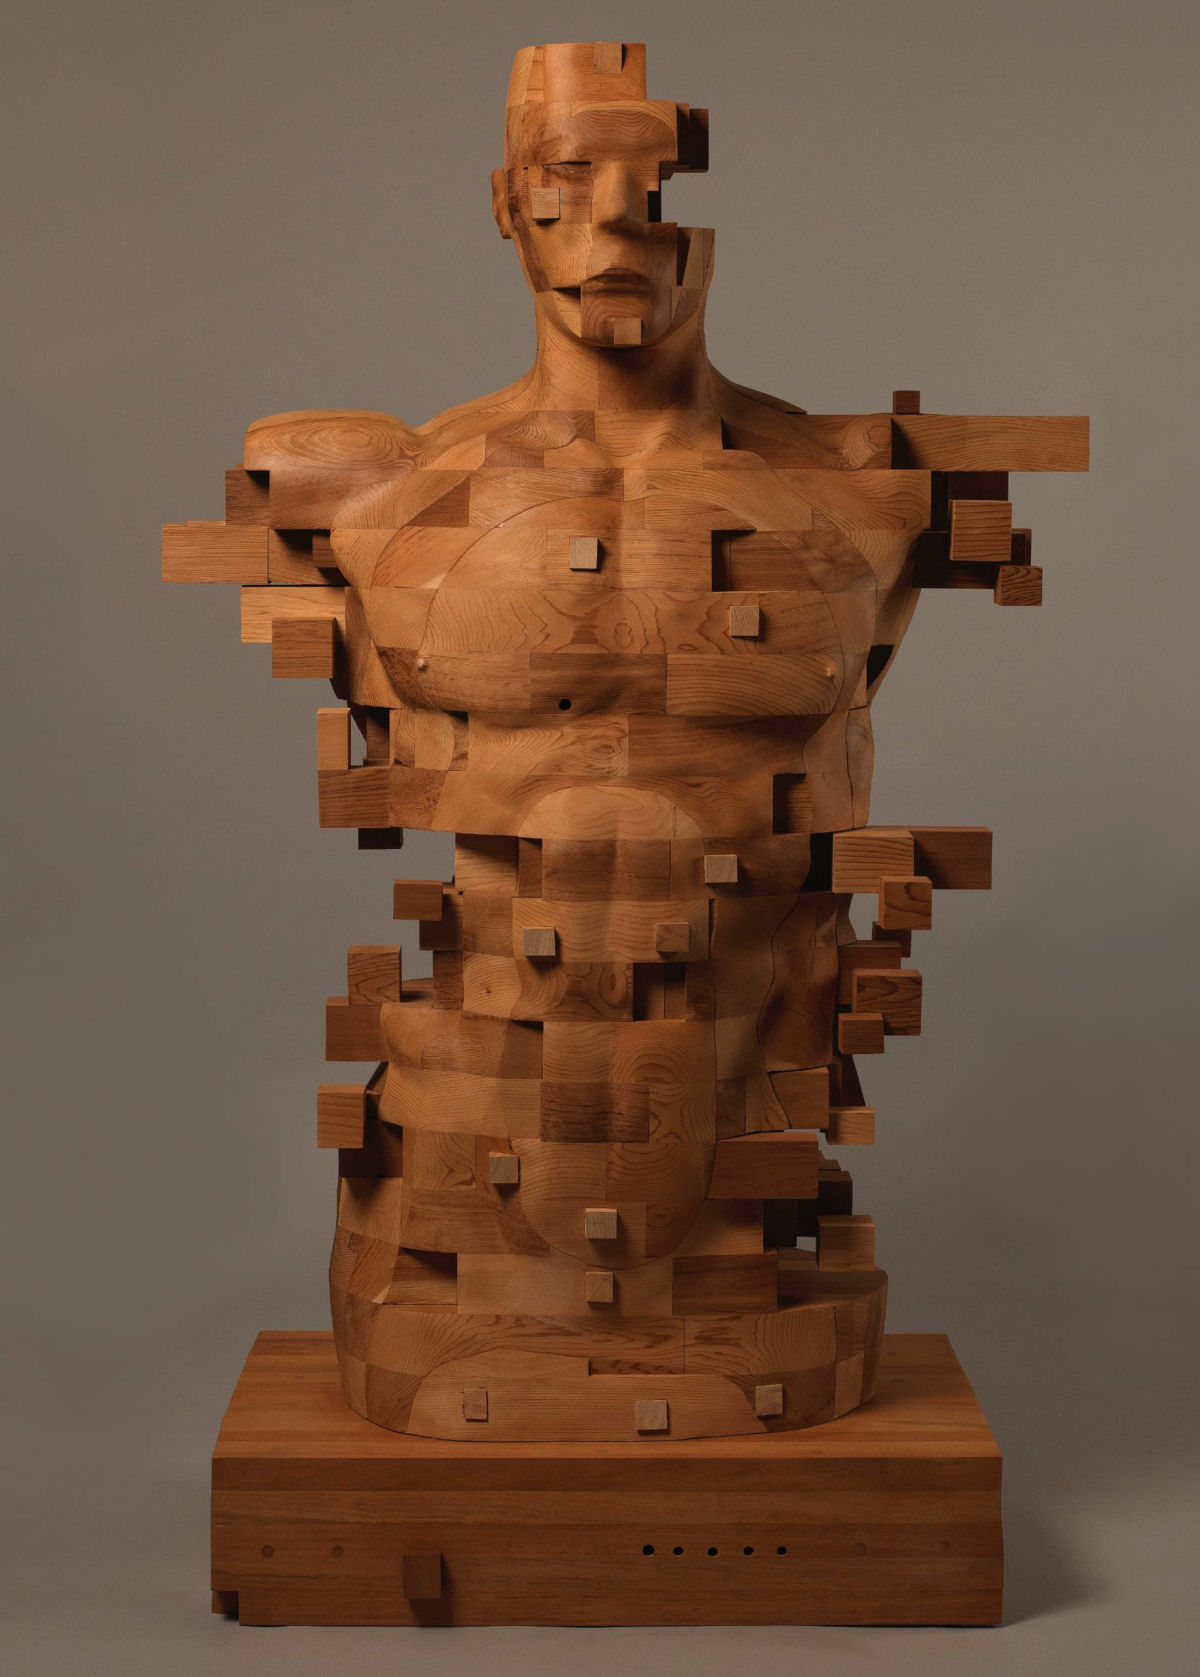 Esculturas figurativas parecem se fragmentar com pixels de madeira 03